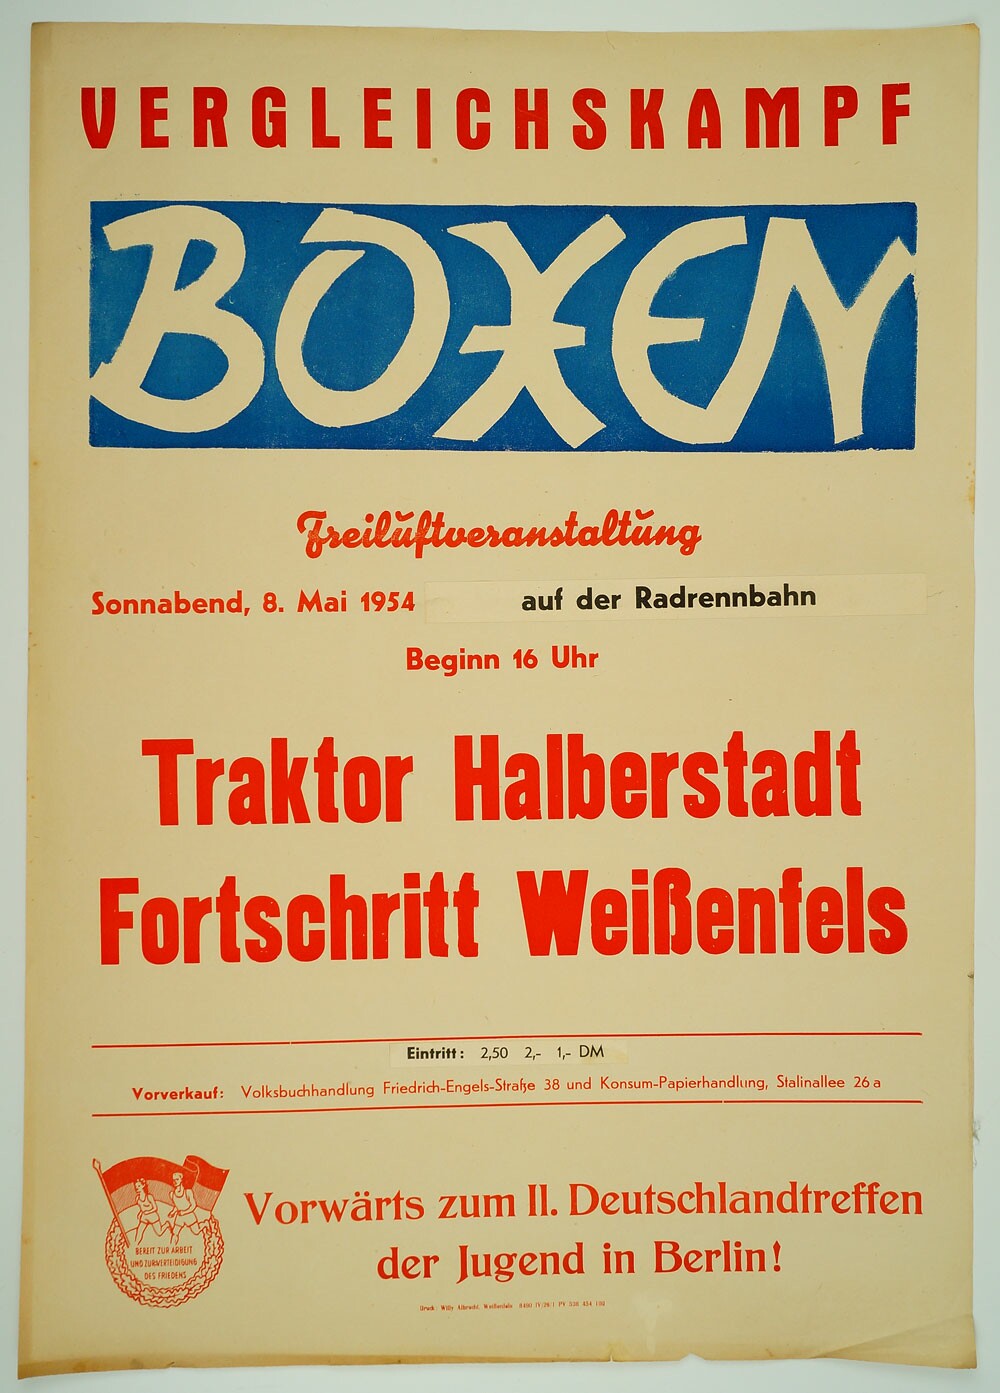 Veranstaltungsplakat Vergleichskampf Boxen, 1954 (Museum Weißenfels CC BY-NC-SA)